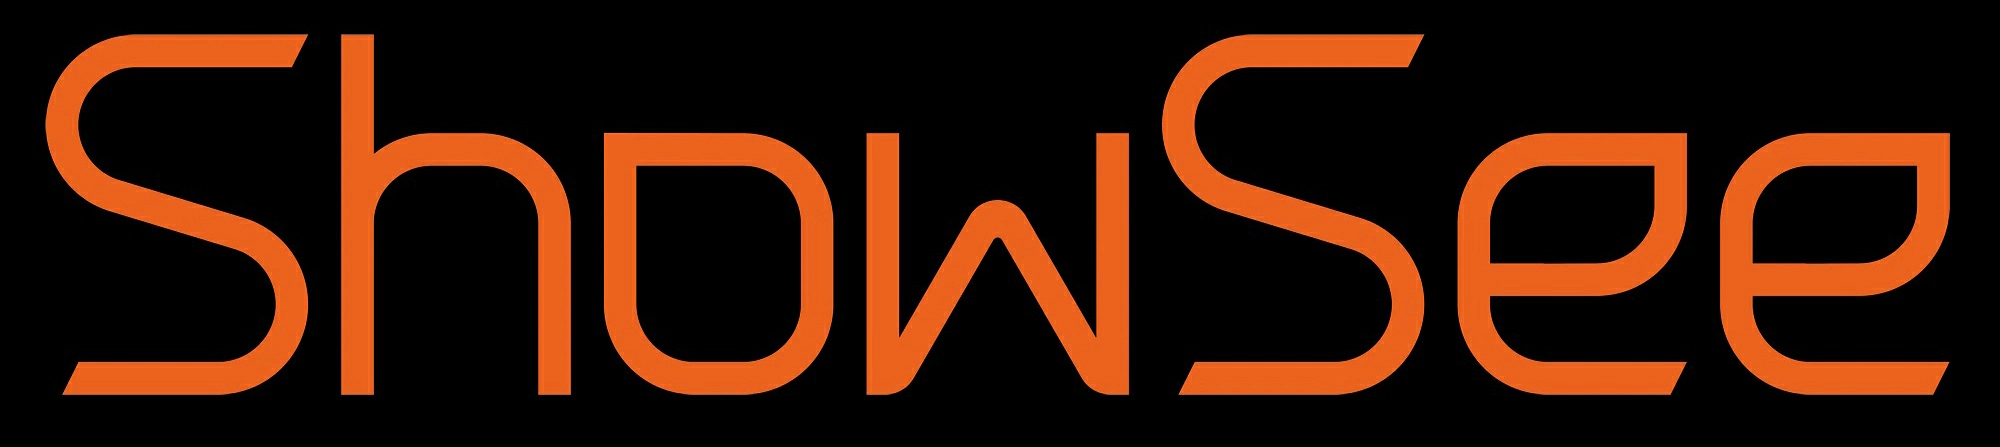 Логотип ShowSee